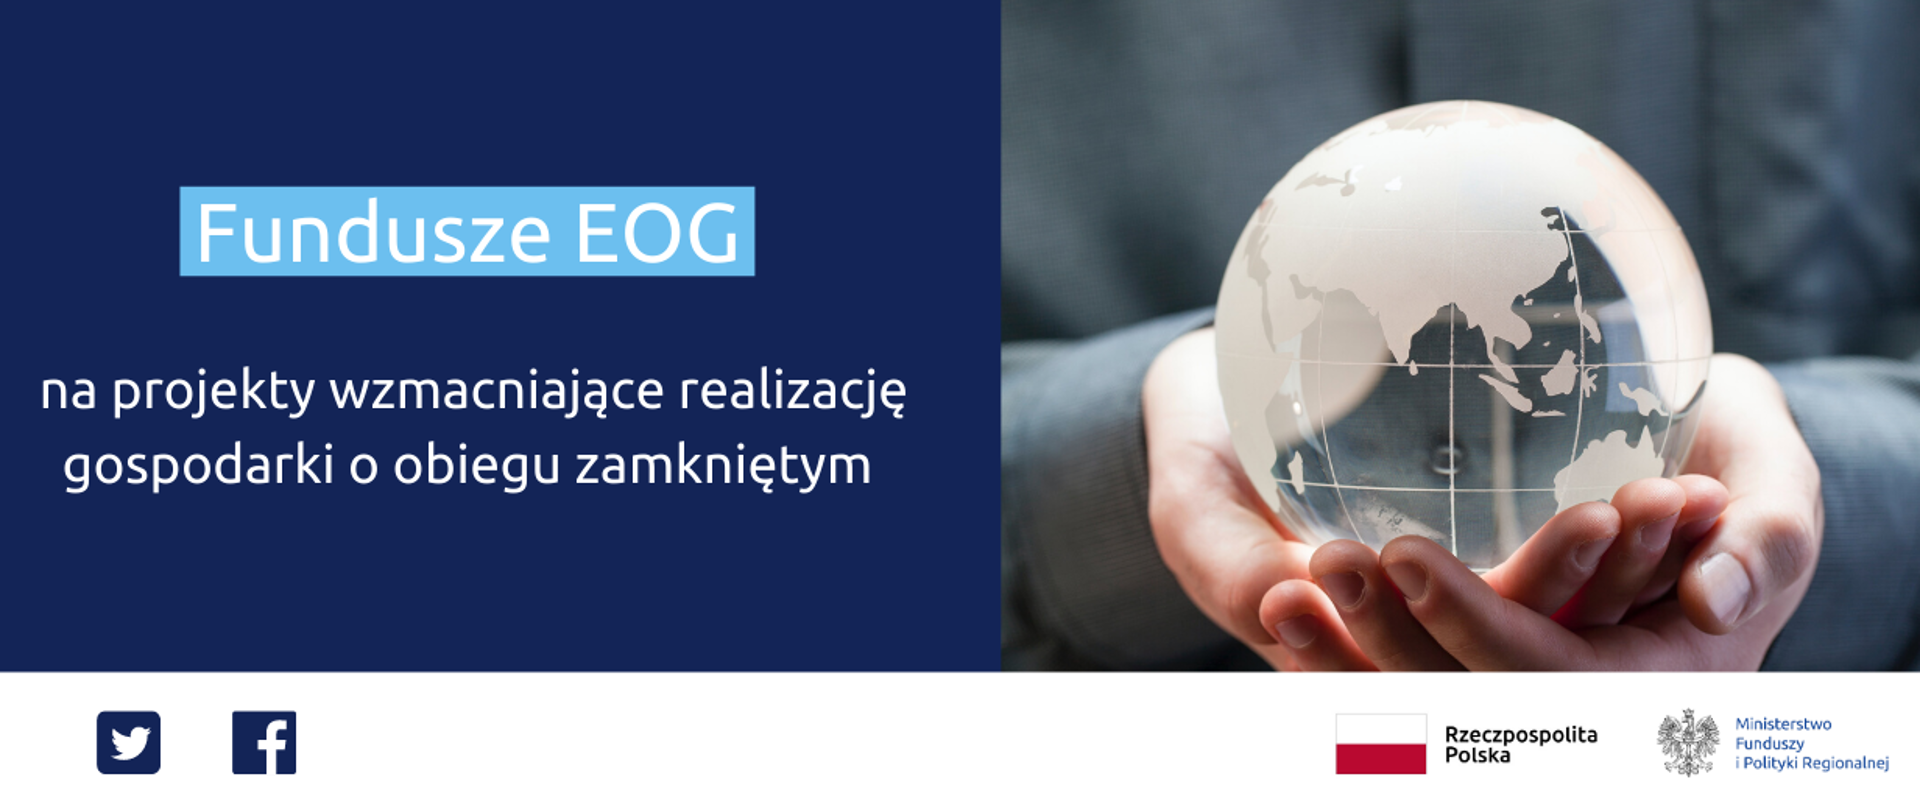 Grafika z napisem Fundusze EOG na projekty wzmacniające realizację gospodarki o obiegu zamkniętym oraz zdjęcie ludzkich rąk trzymających szklaną kulę 